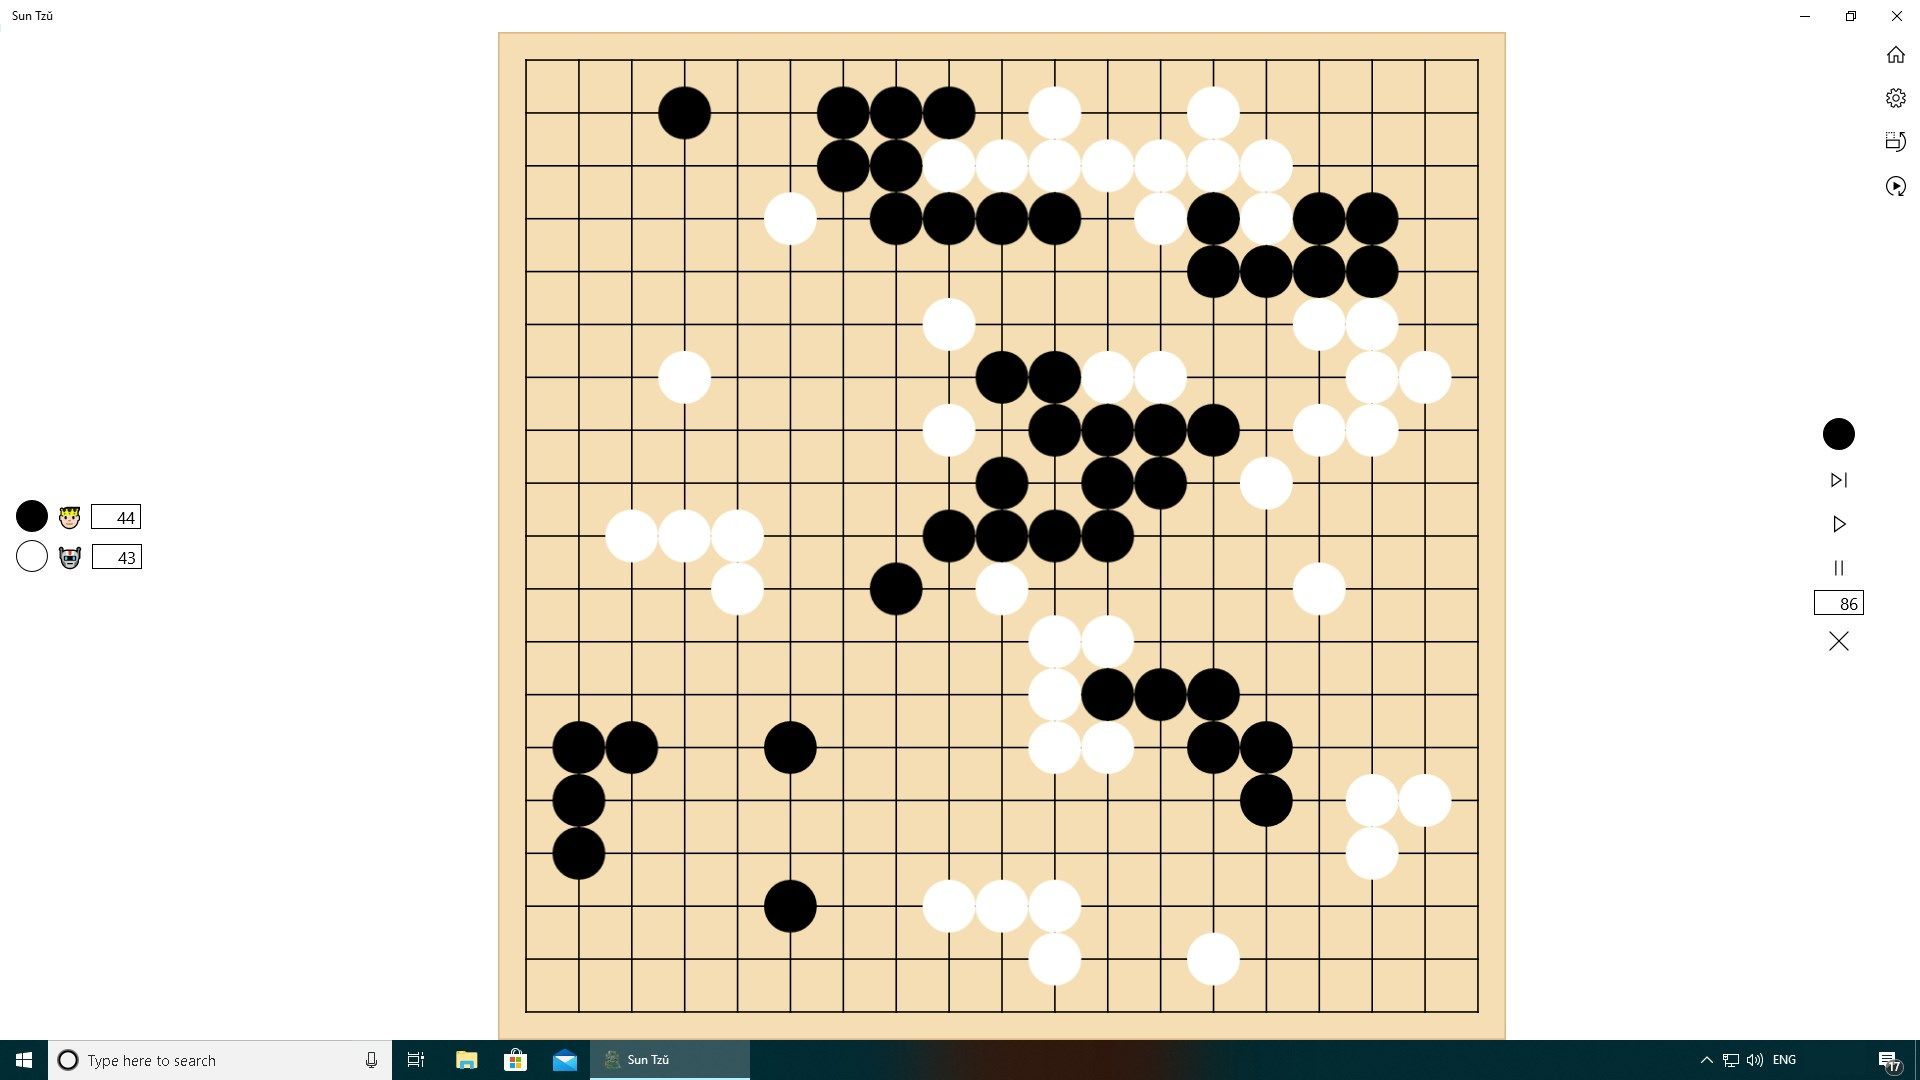 Surrounding Chess - 1 one 1